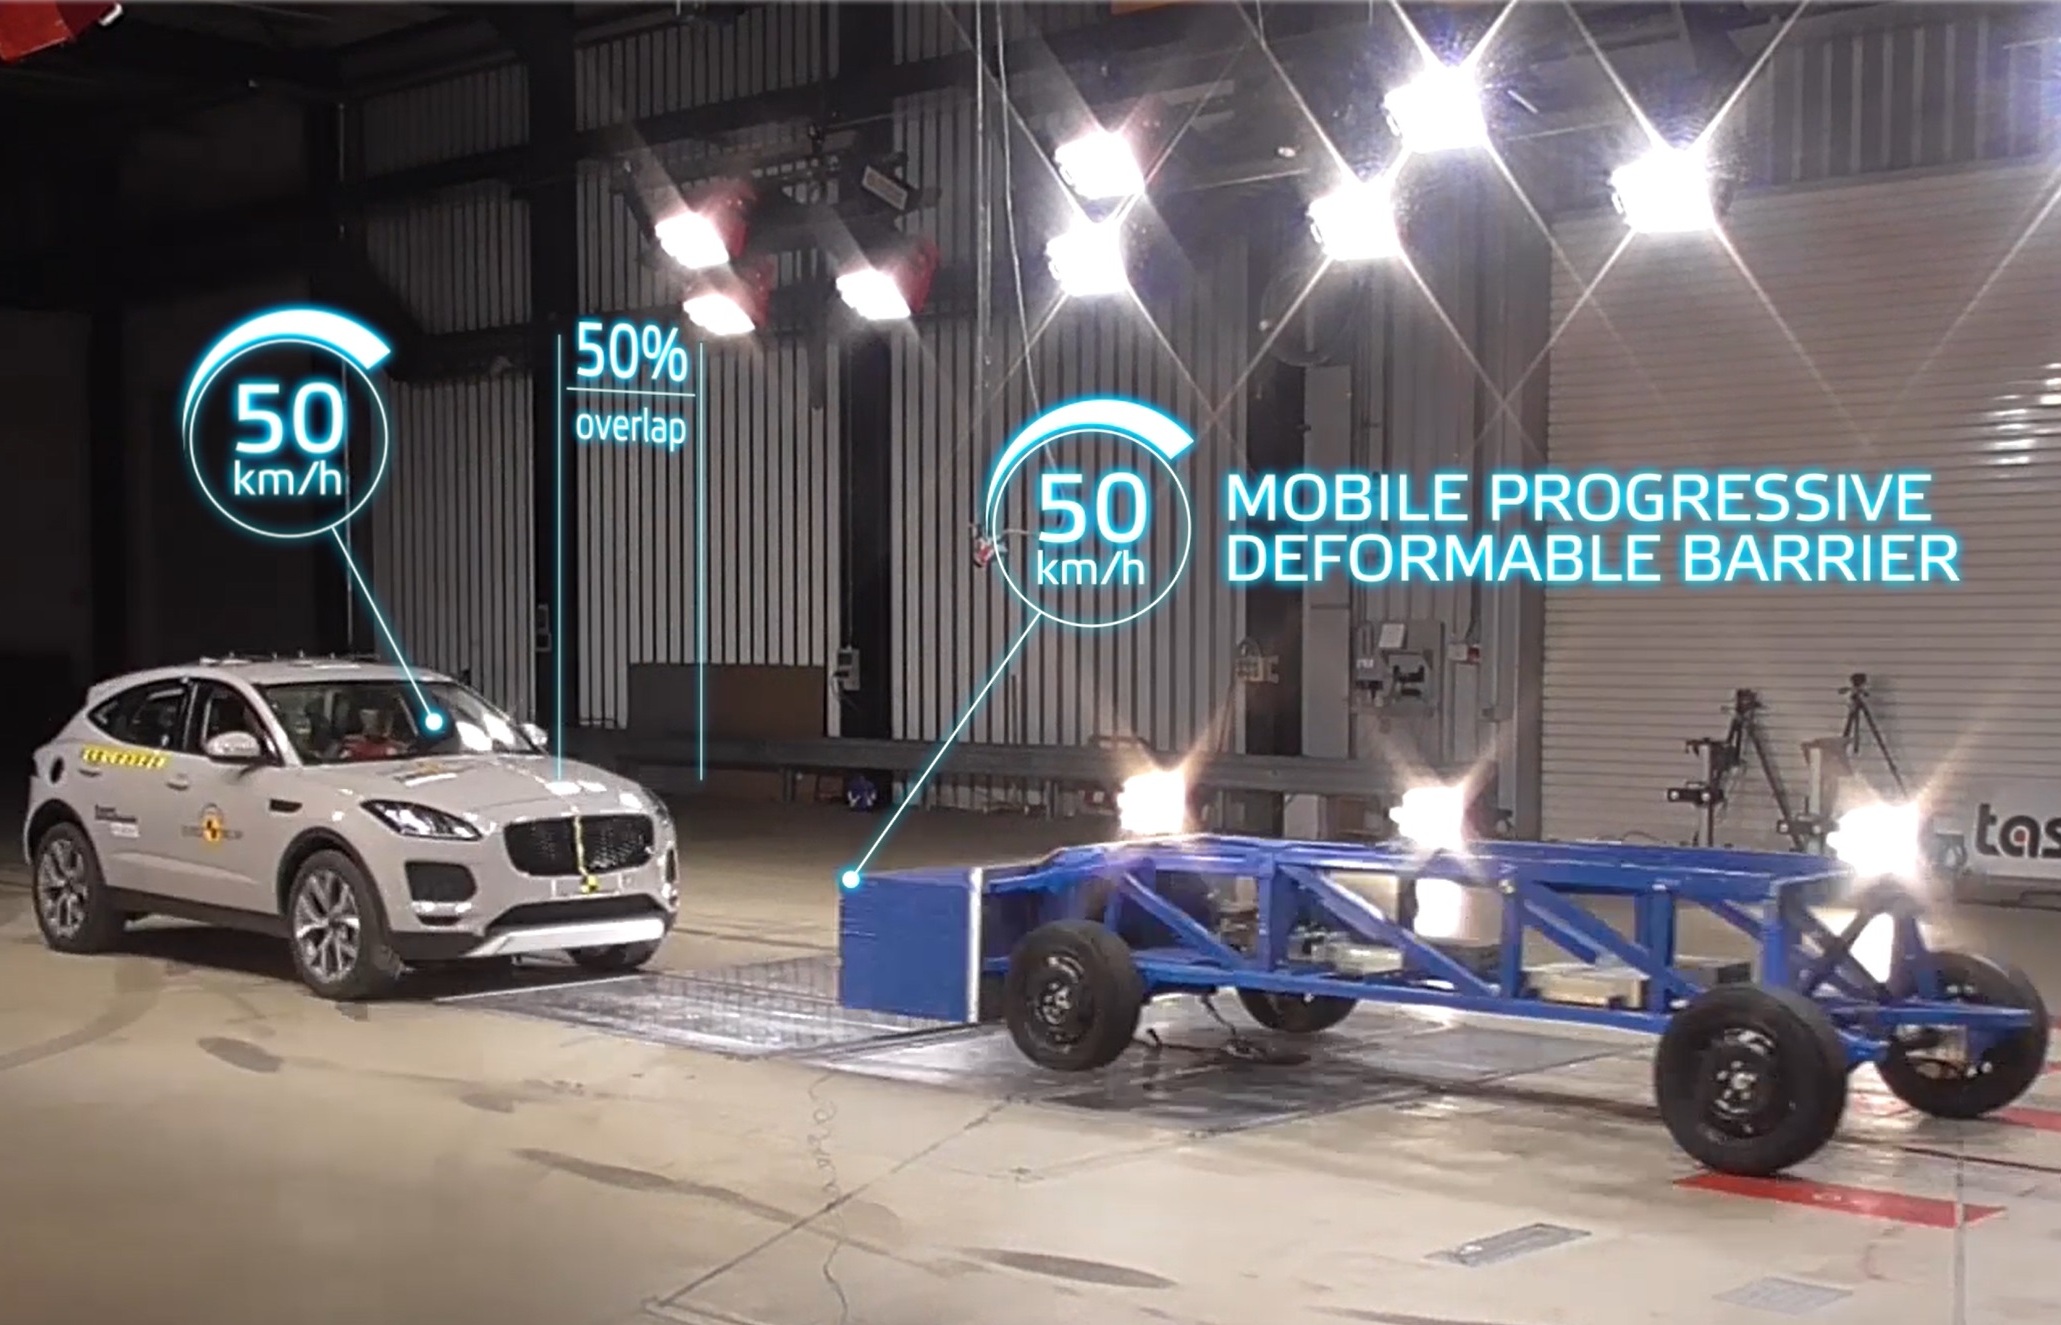 Mobile progressive deformable barrier test sets new automotive safety standard